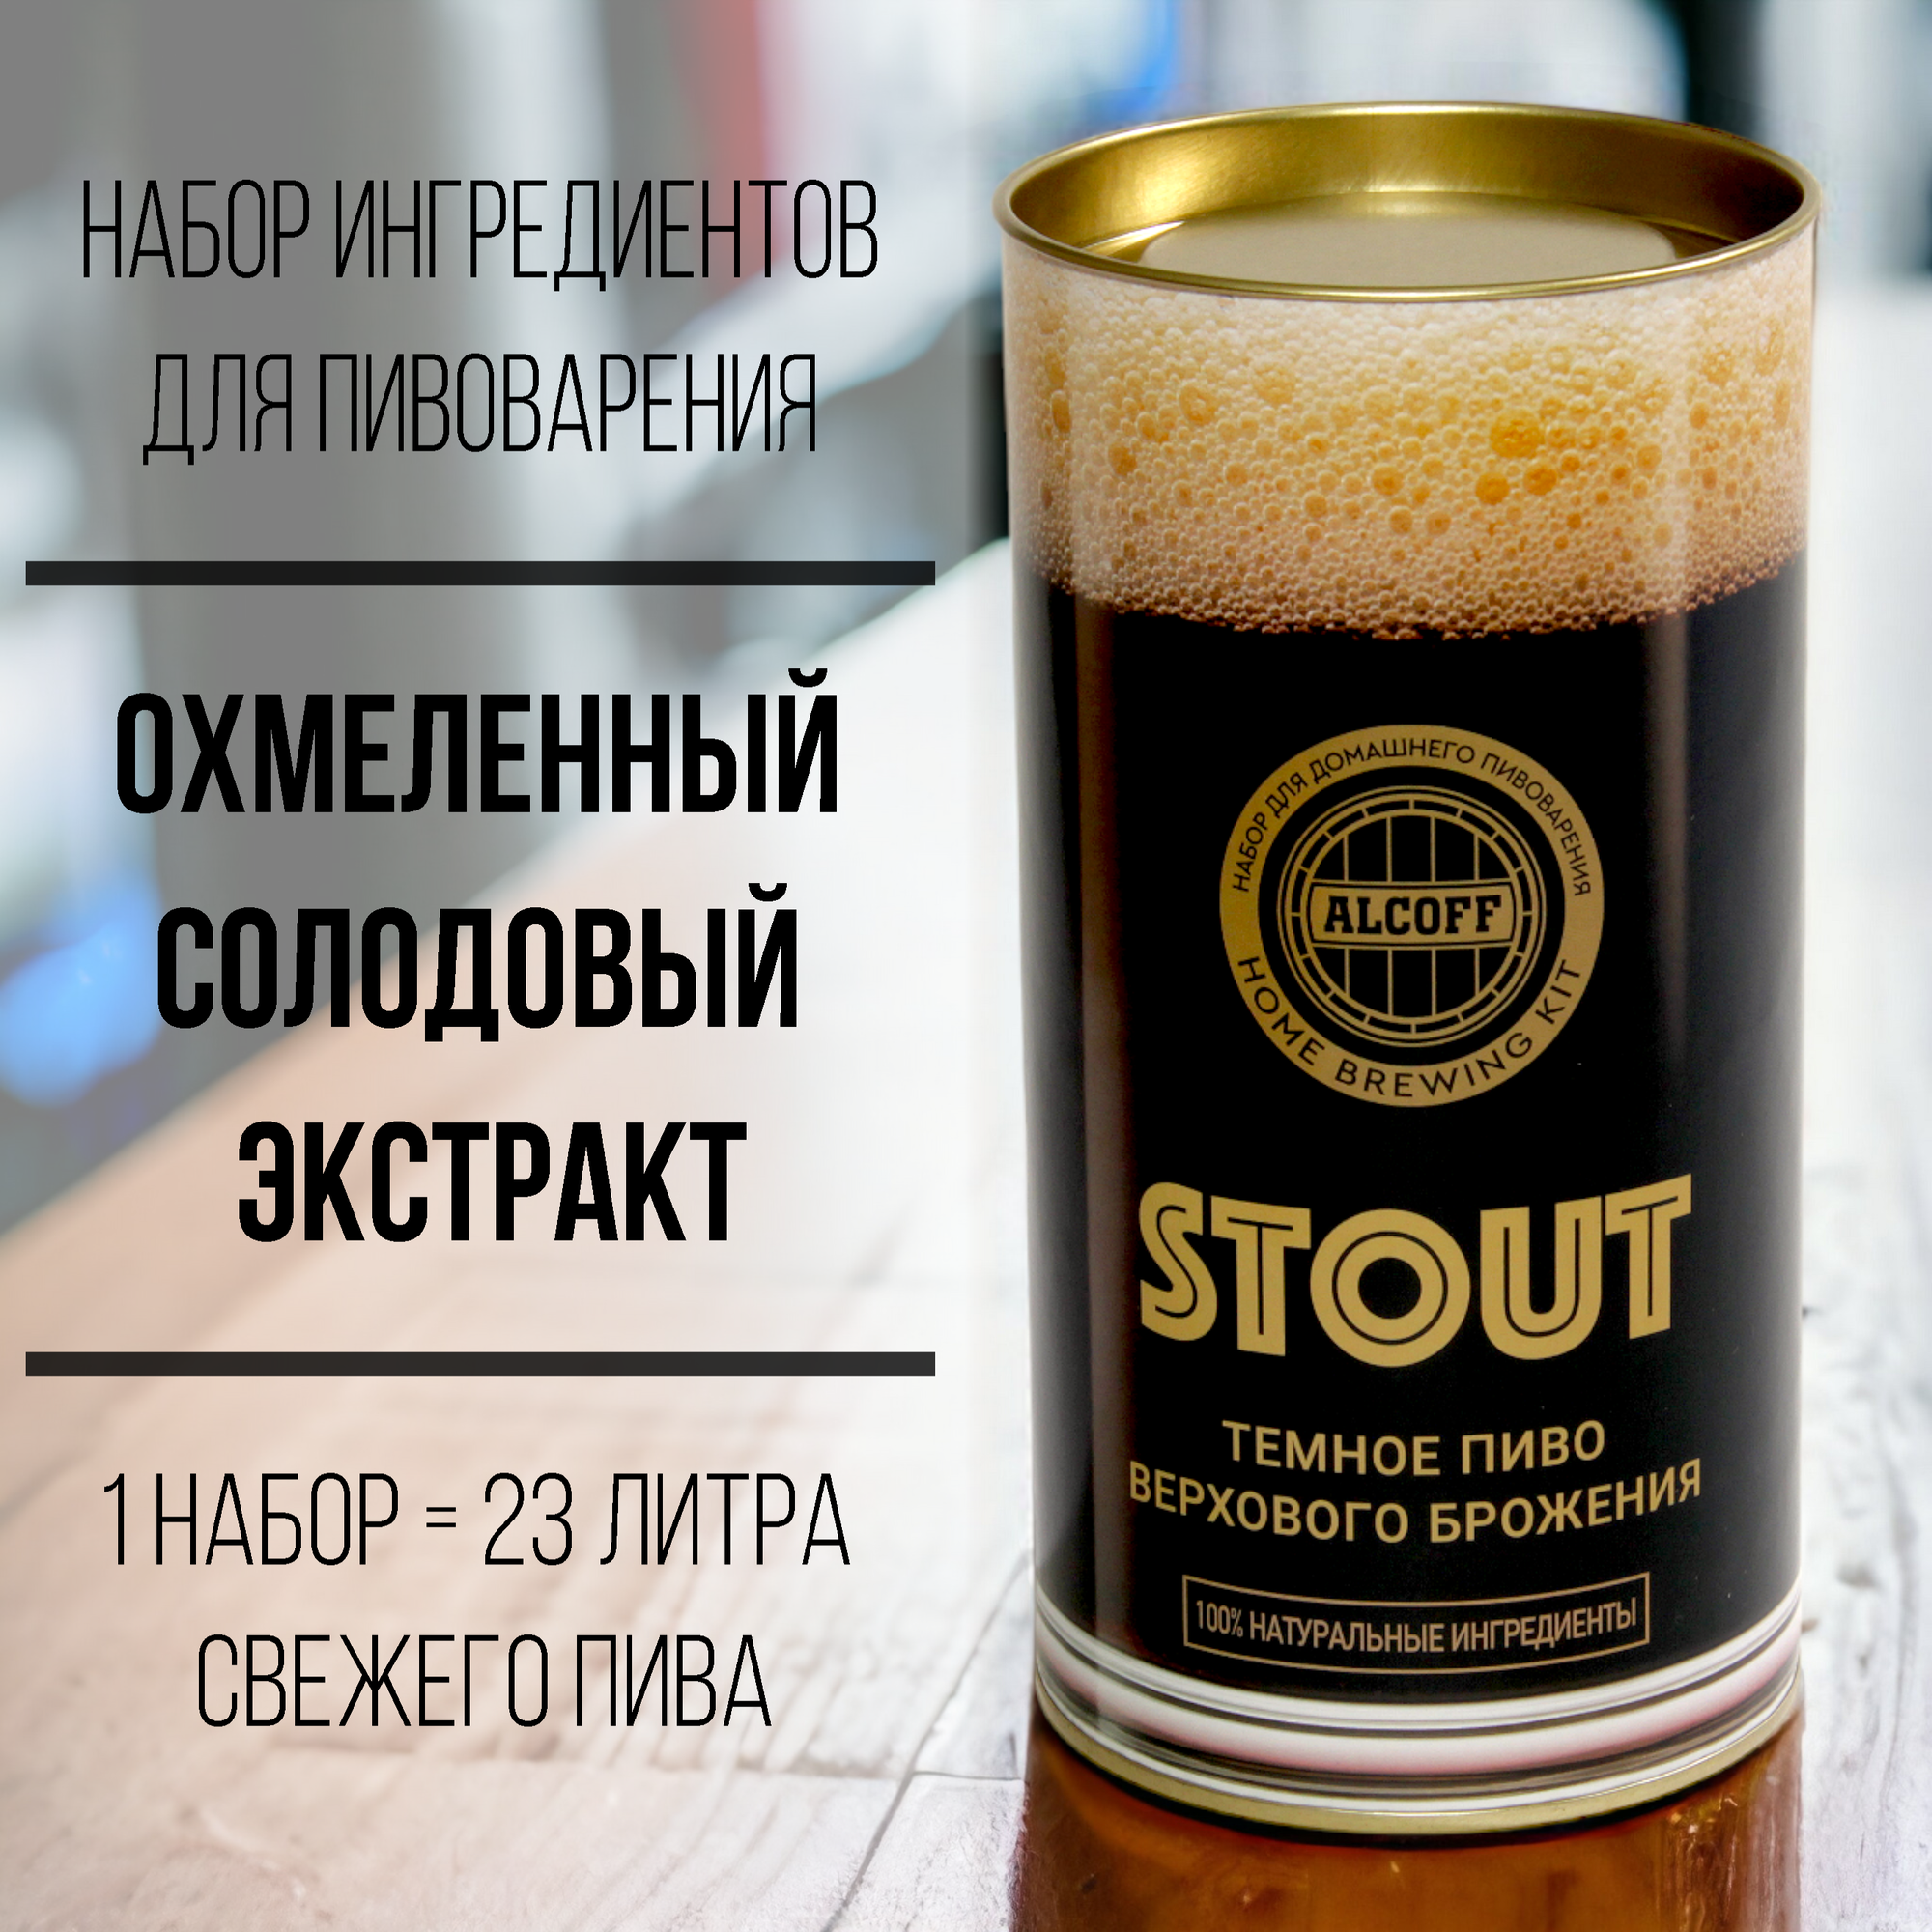 Охмелённый солодовый экстракт Alcoff "Stout" тёмное, 1.7 кг